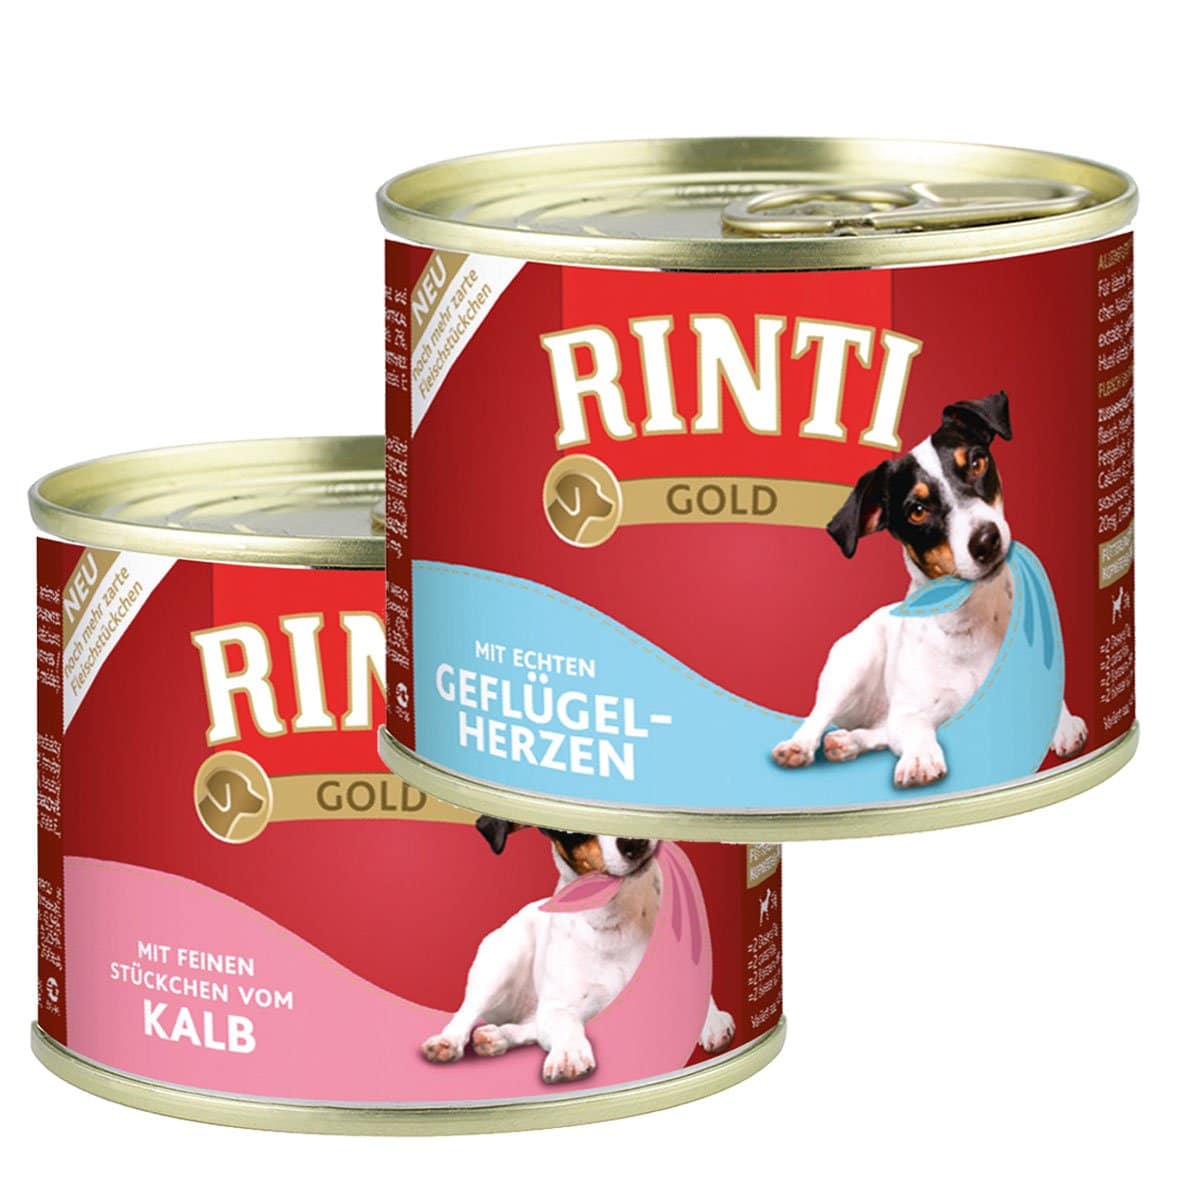 Rinti Gold Mix aus Geflügelherzen & Kalbstückchen 24x185g